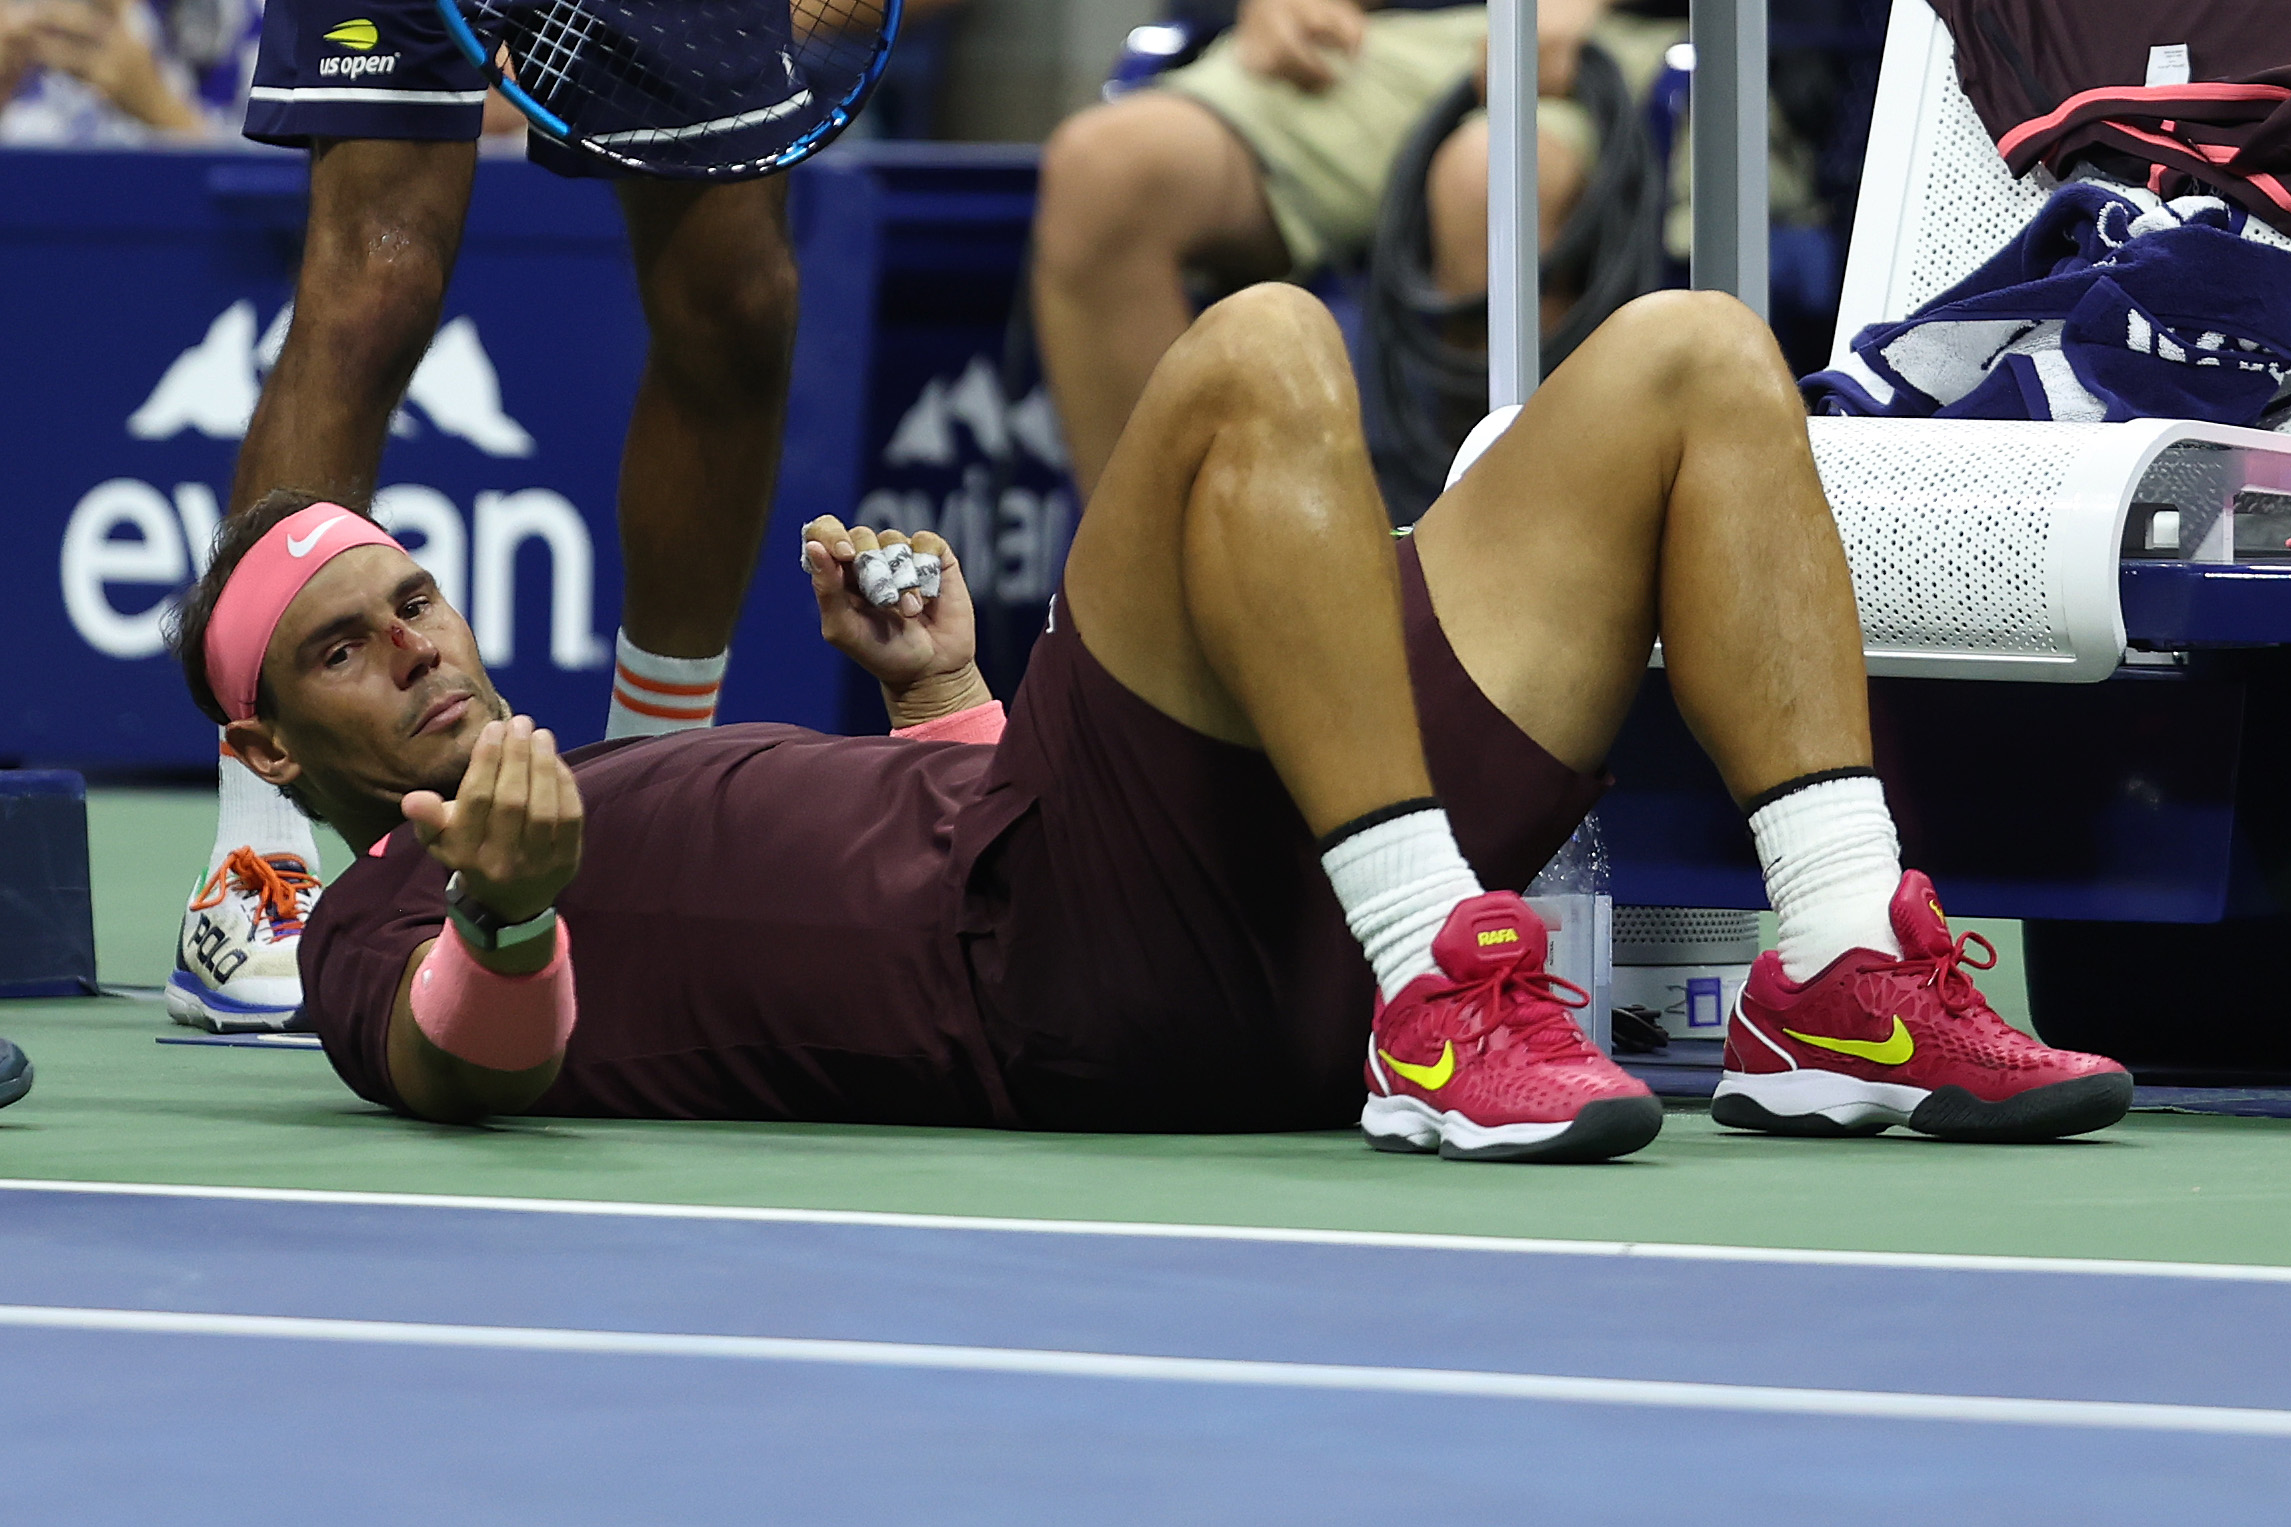 Rafael Nadal și-a spart nasul cu racheta. Doctorii au intrat pe teren: Arată ca un jucător de hochei